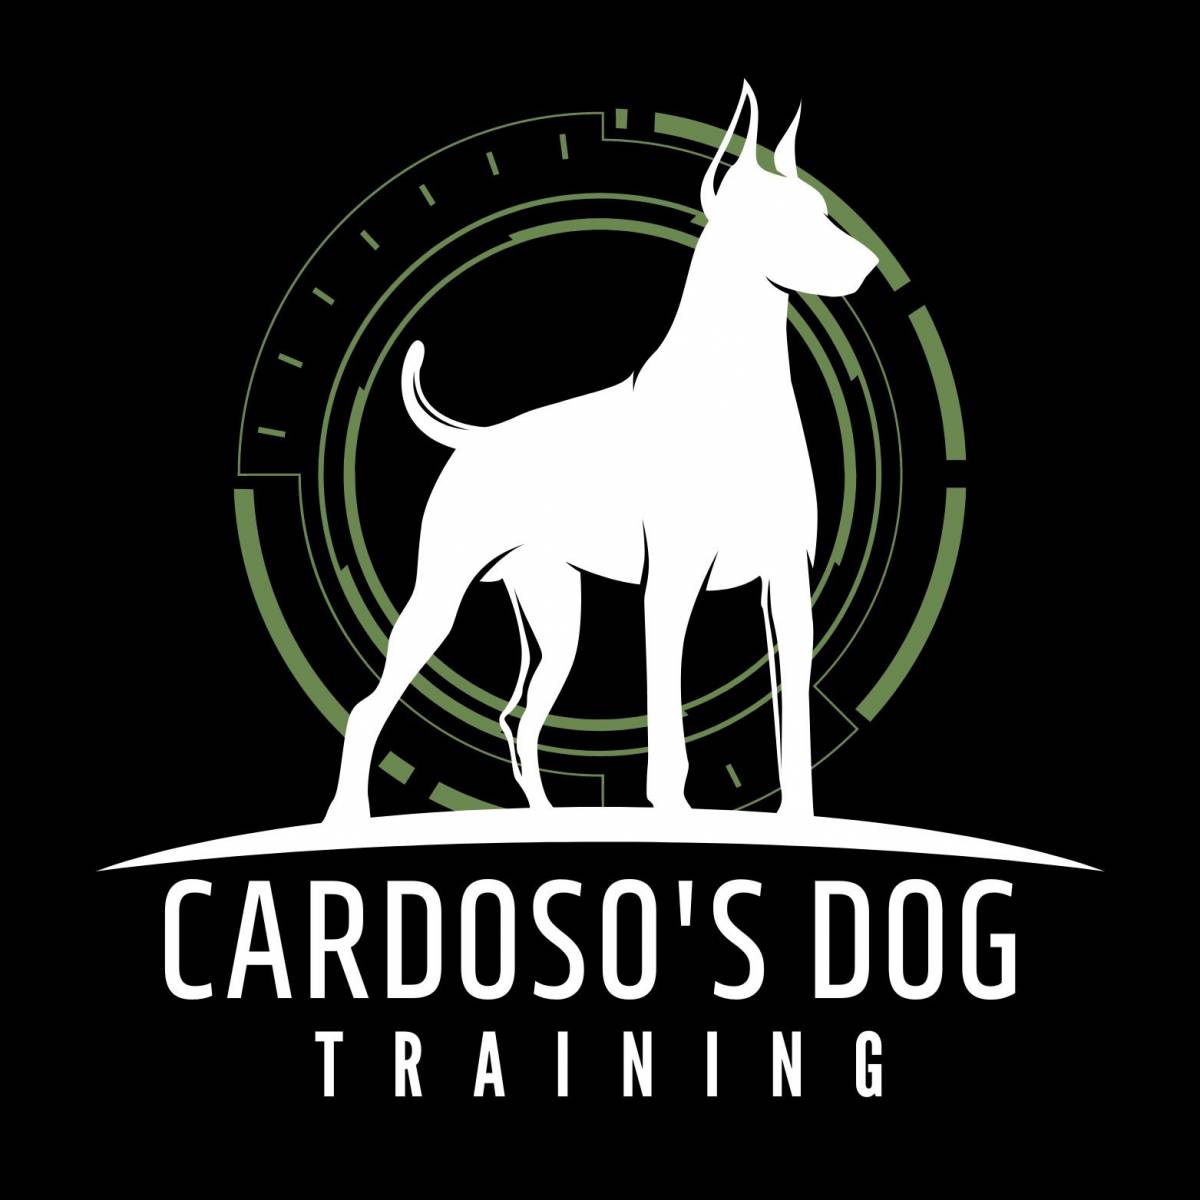 Cardoso’s Dog Training - Oeiras - Treino de Cães - Aulas